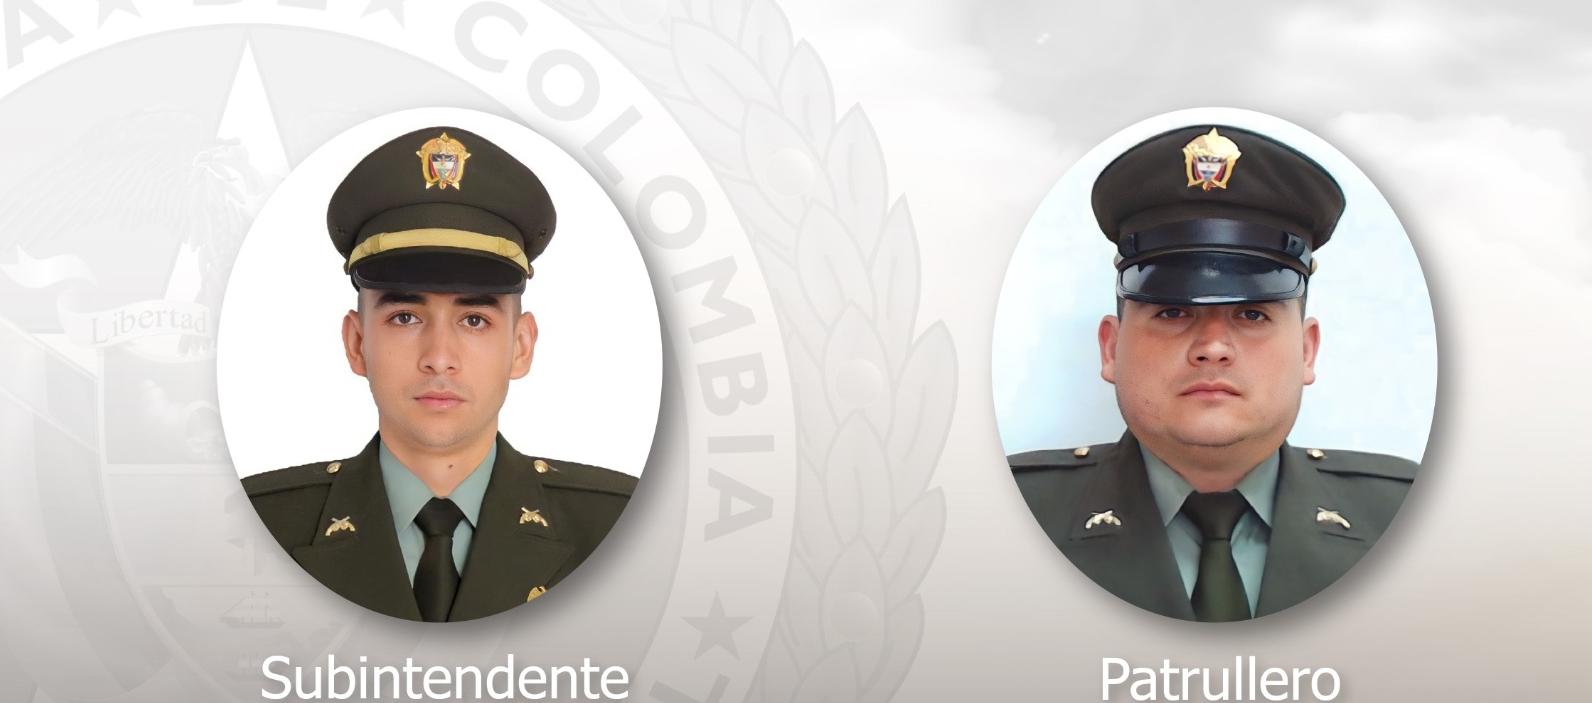 Los dos policías fallecidos en el atentado terrorista. 